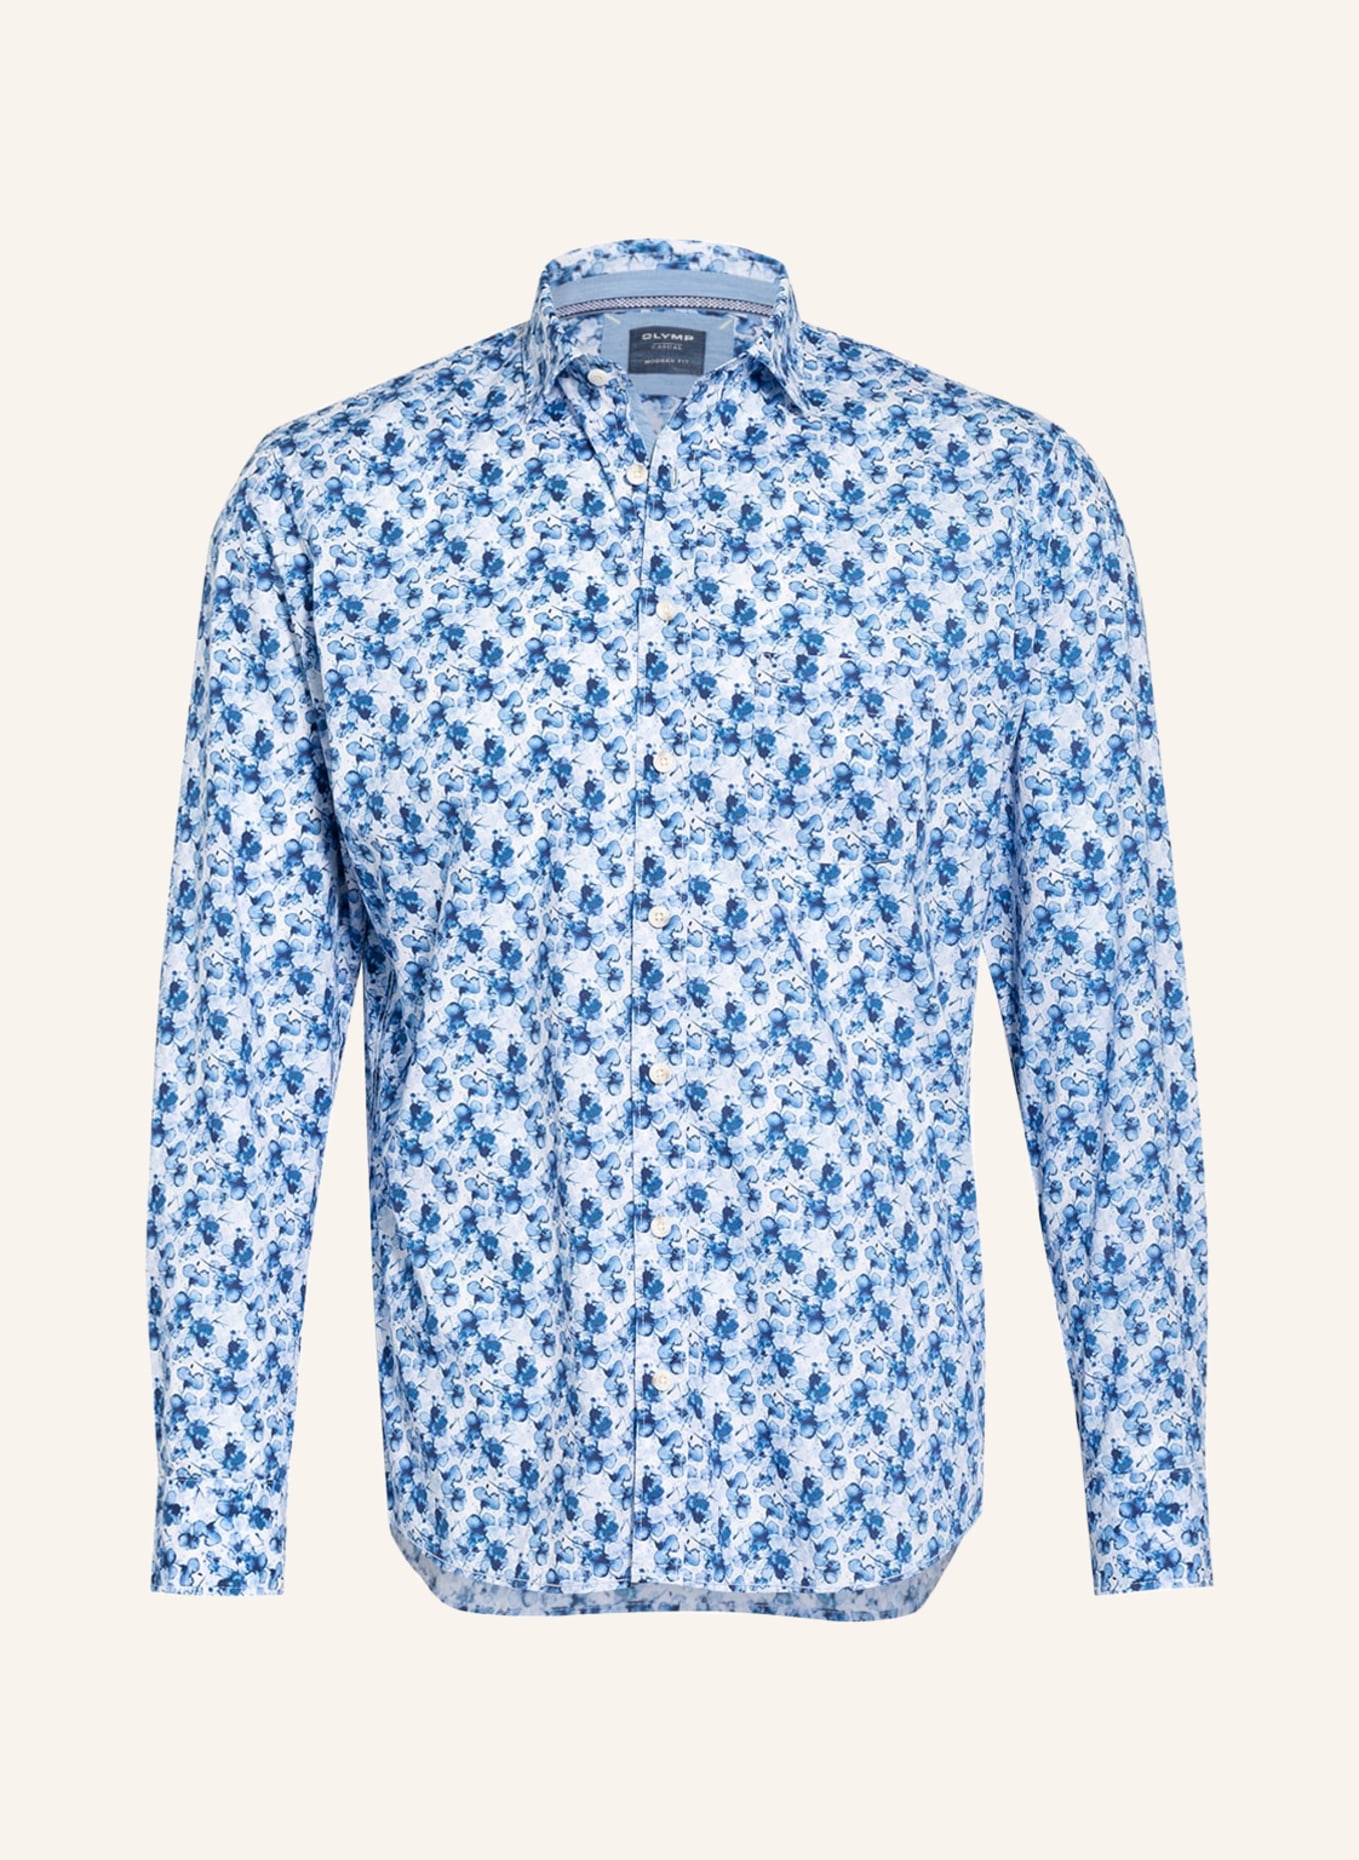 OLYMP Hemd in fit Casual hellblau modern blau/ weiss